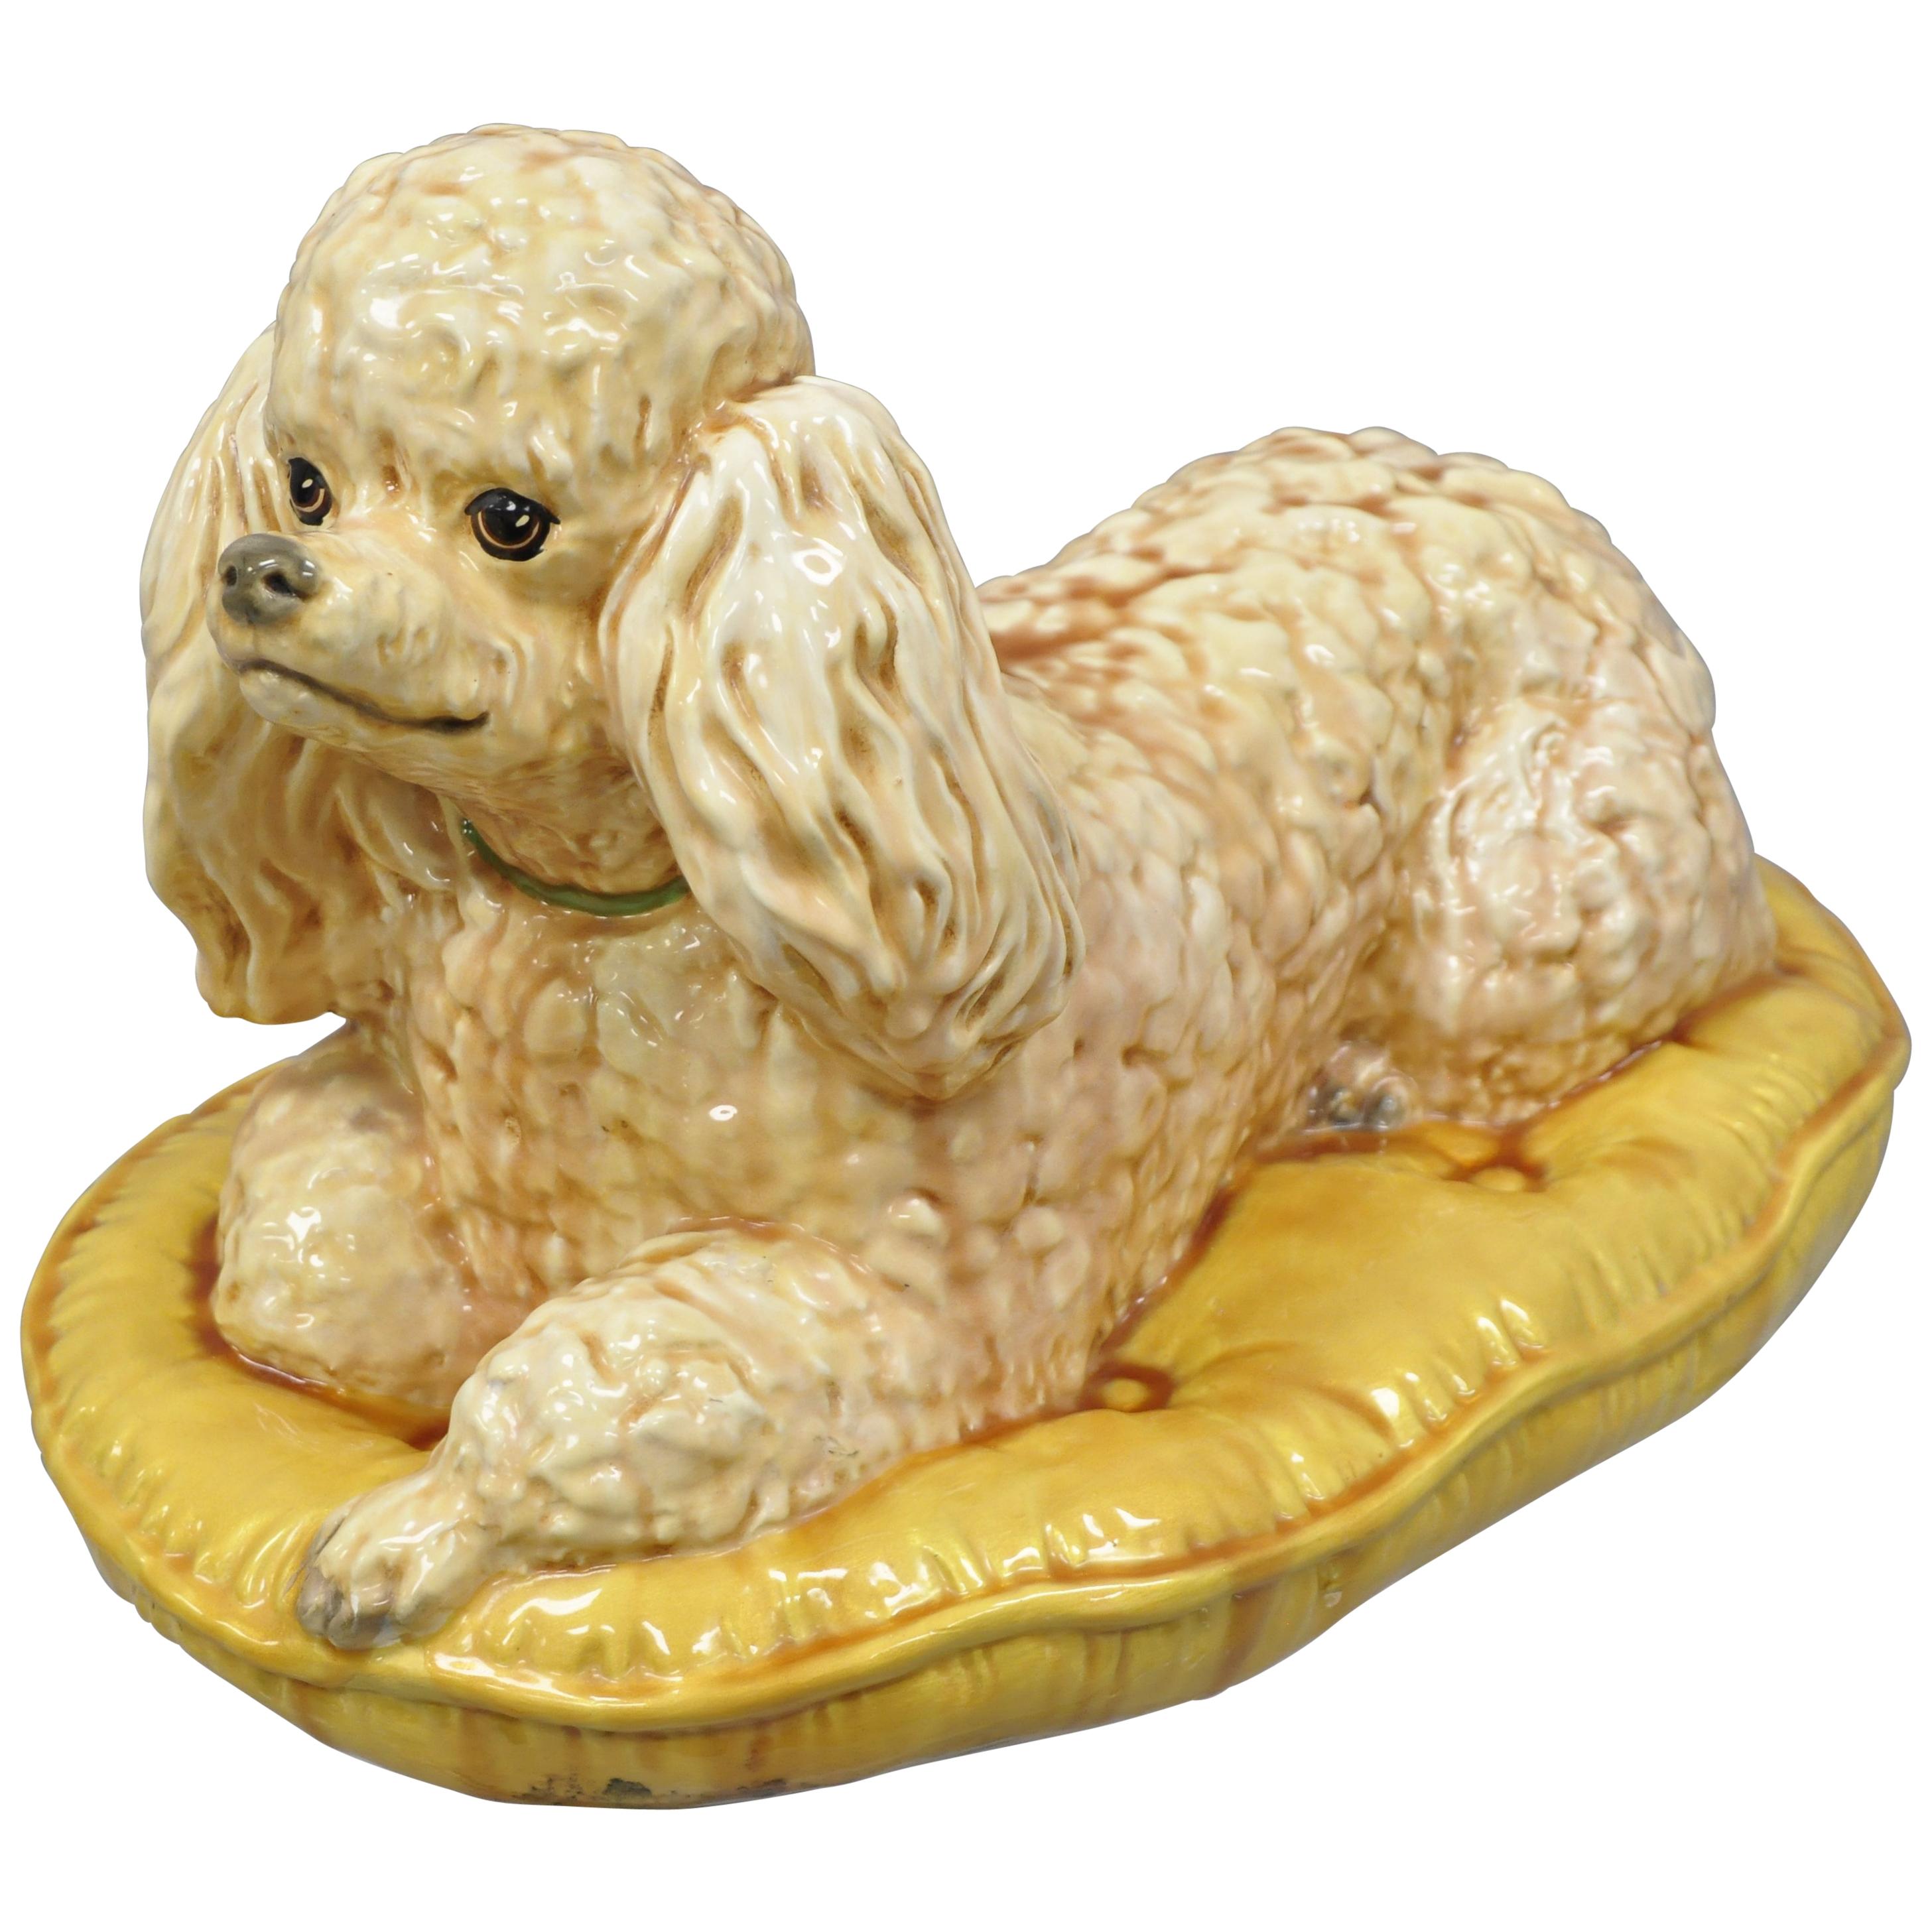 Vintage glasierte Keramik Pudel-Hunde-Figur auf Gold getuftetem Kissen, Statue-Figur, Vintage